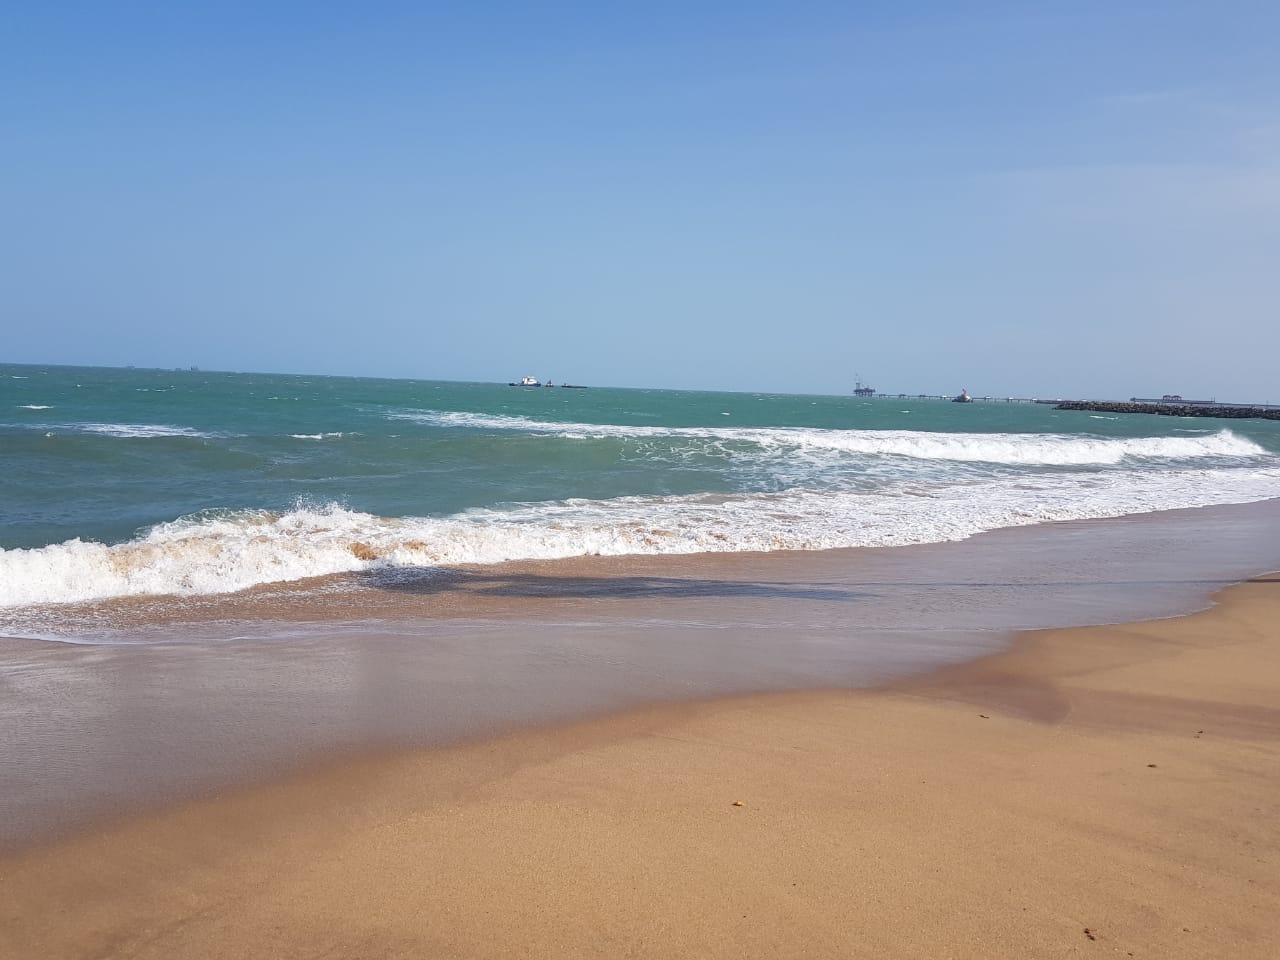 Kallamozhi Beach'in fotoğrafı parlak kum yüzey ile